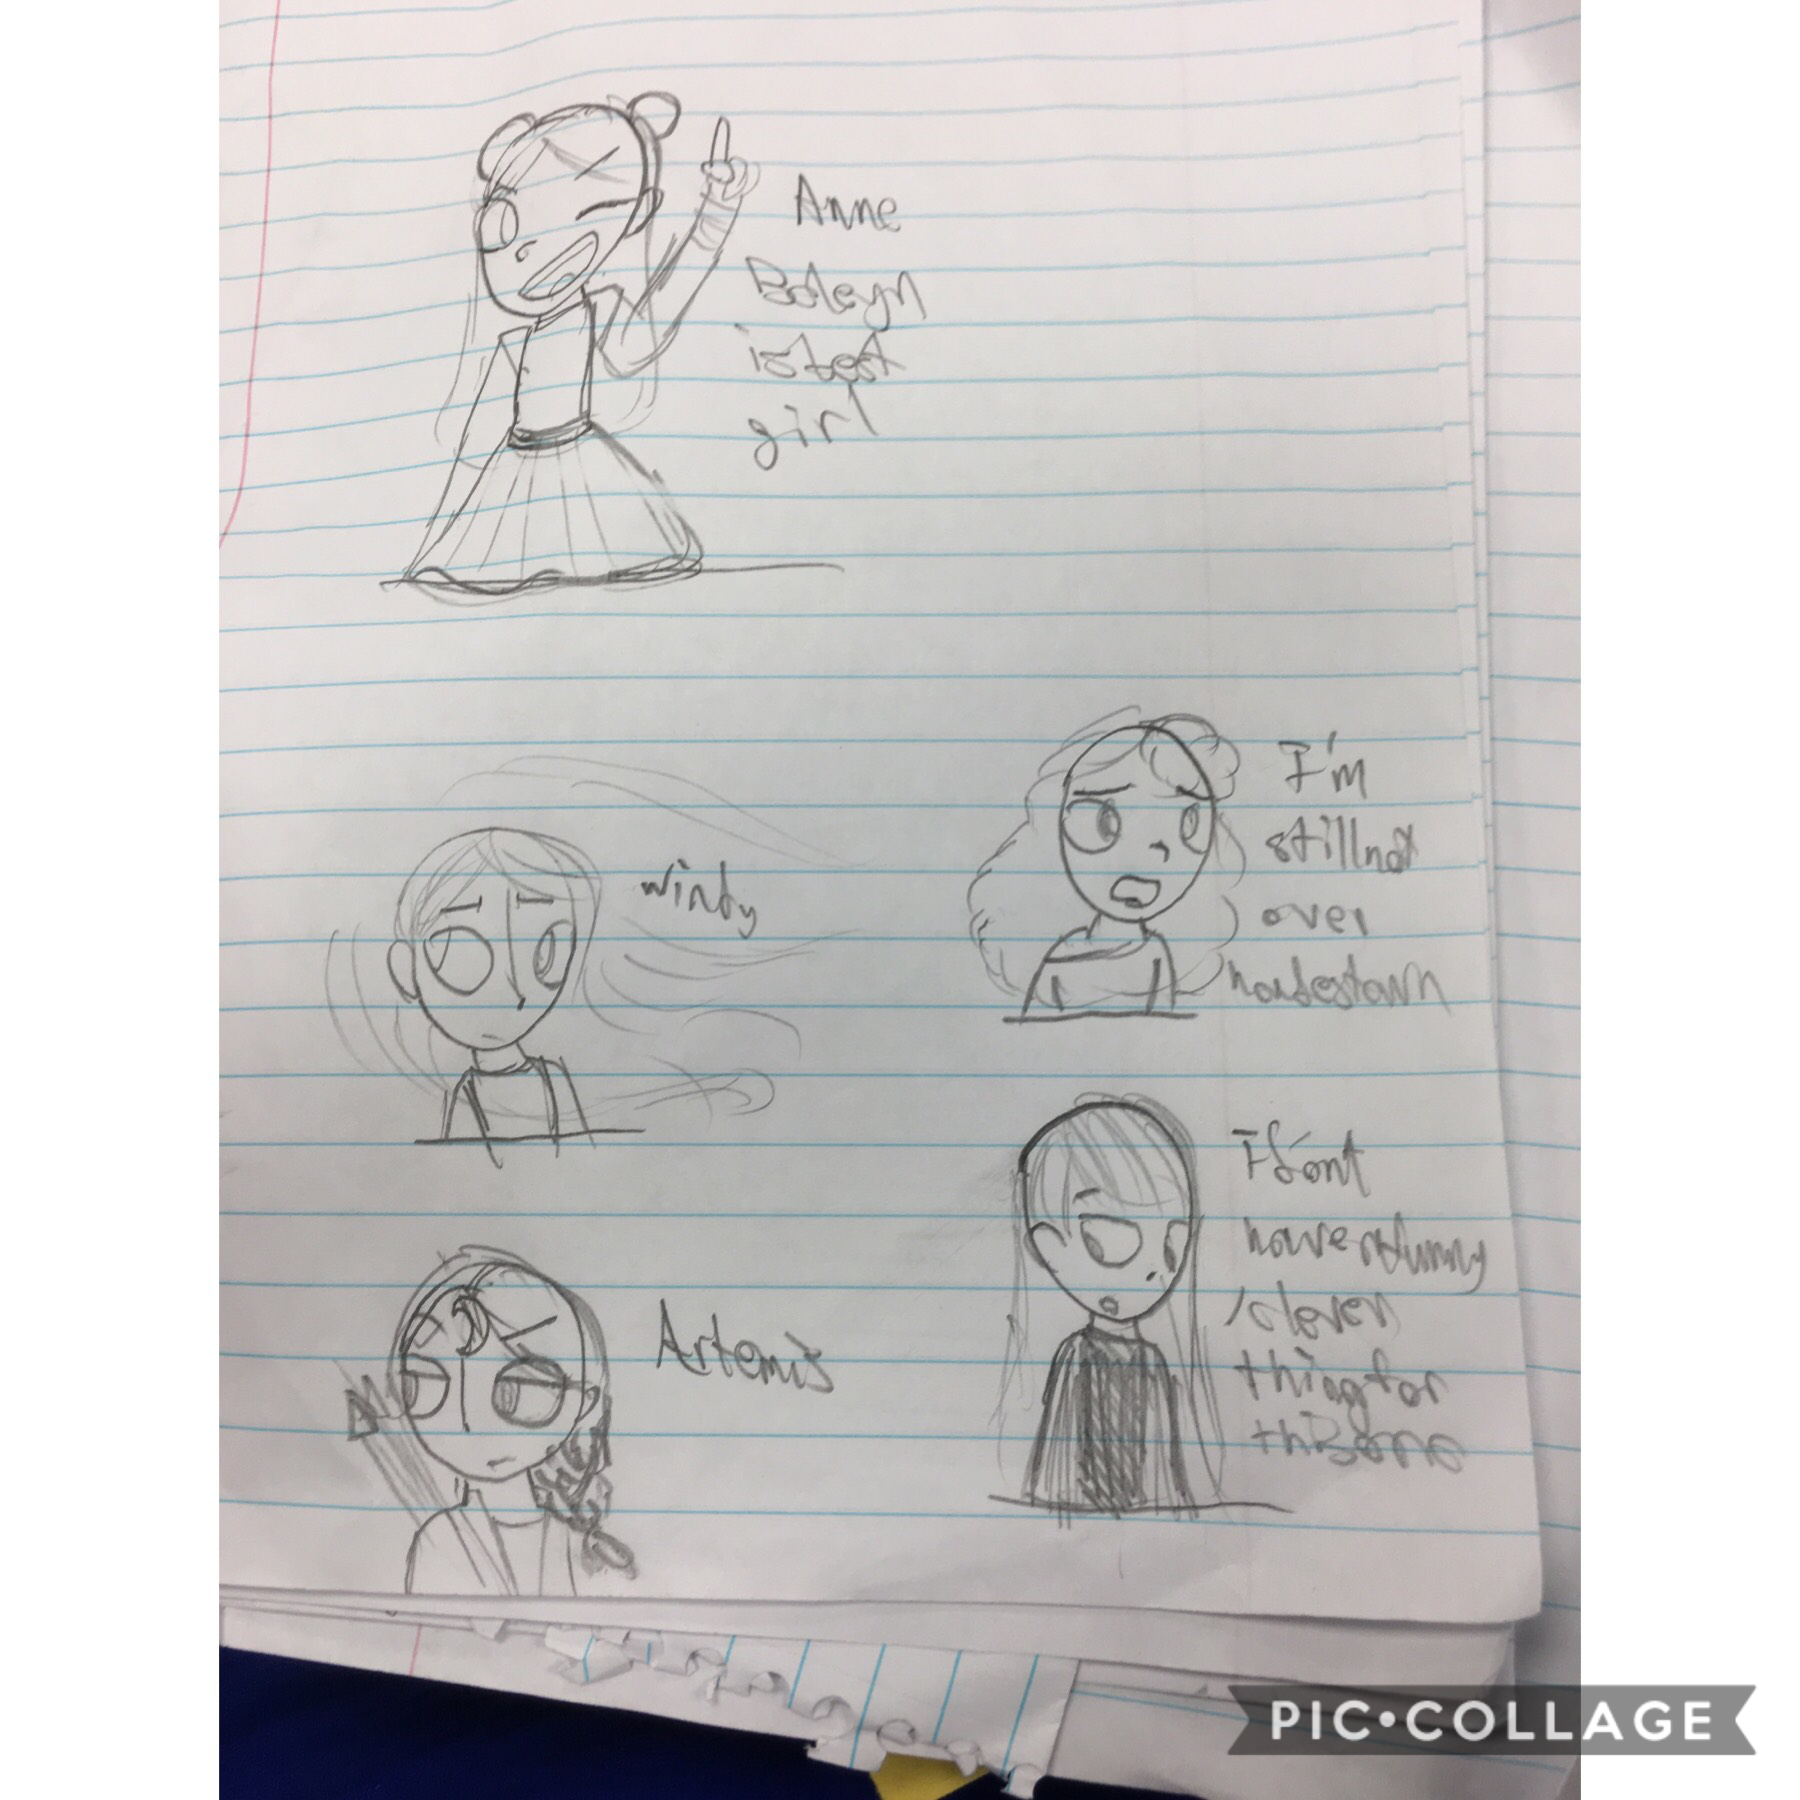 Doodles in class